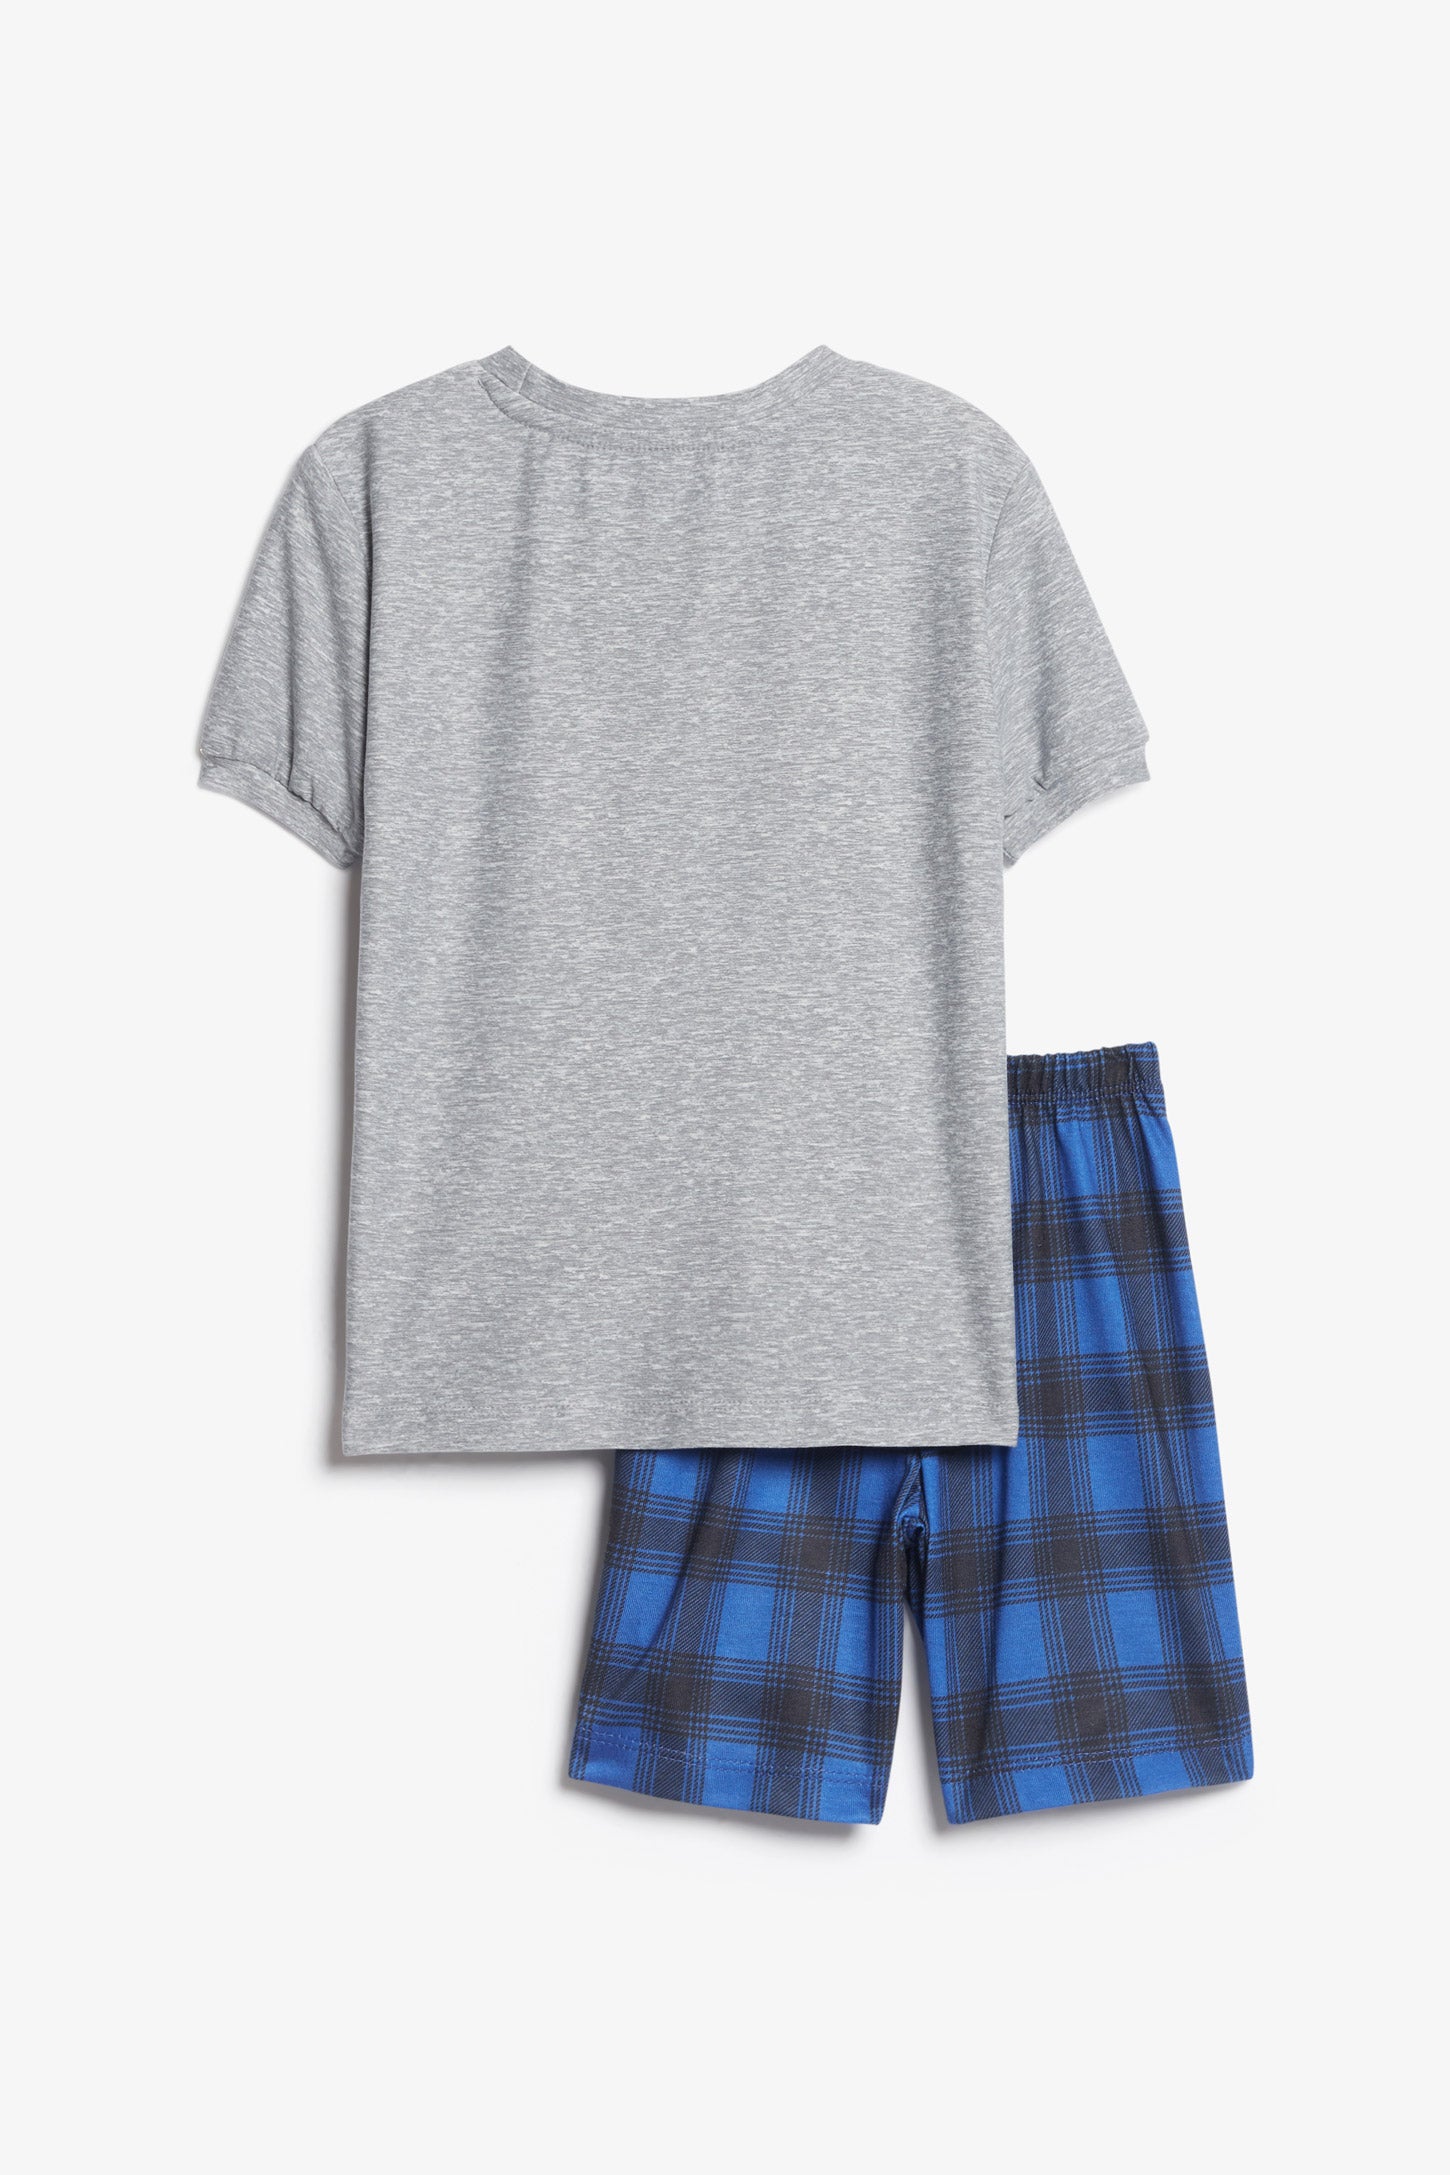 Pyjama 2-pièces t-shirt et short, 2/35$ - Enfant garçon && GRIS MIXTE